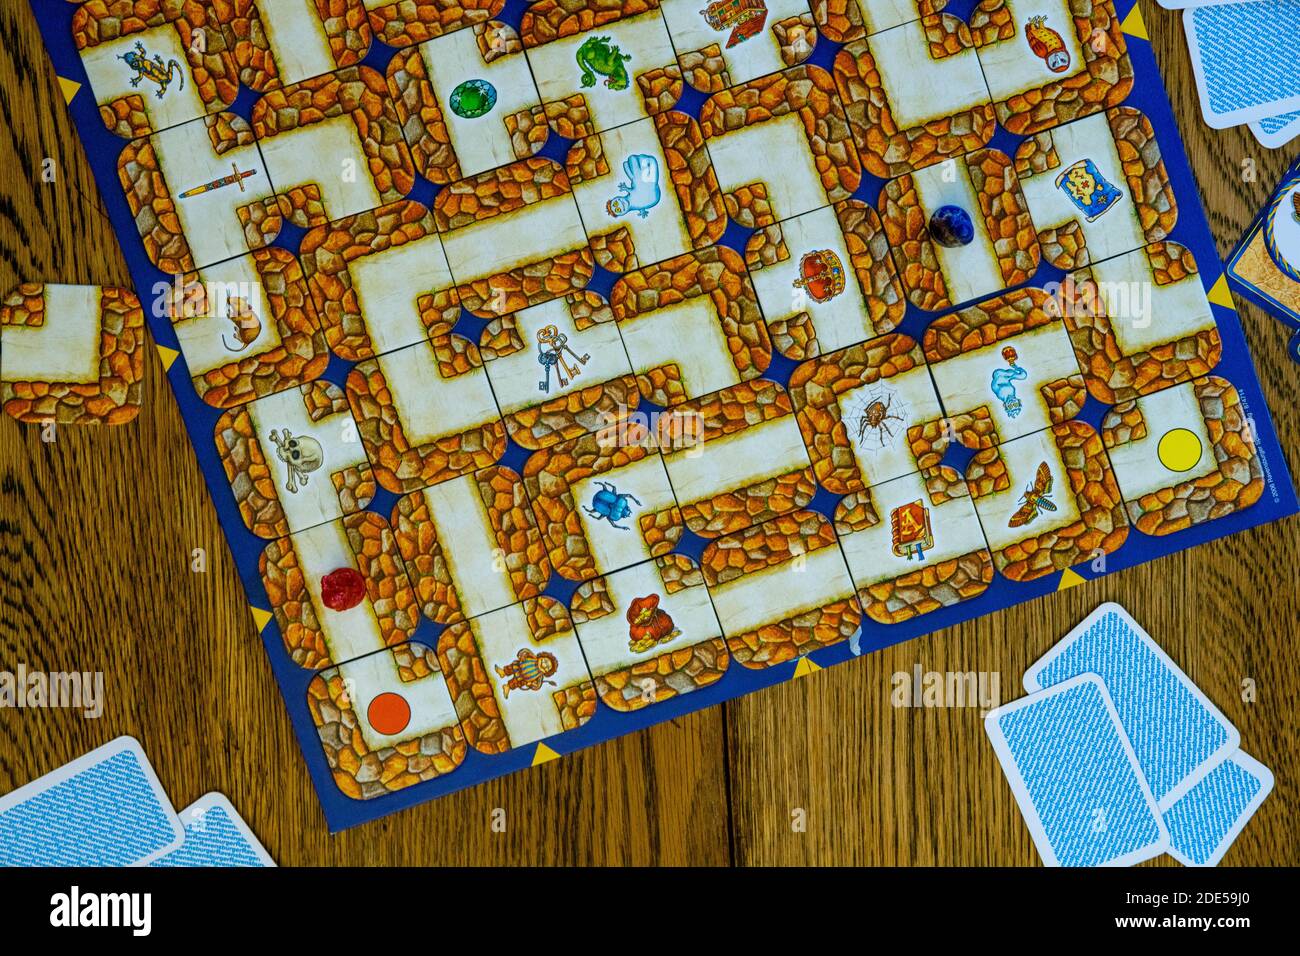 Durham, Großbritannien - 23. April 2020: Labyrinth Brettspiel. Die Spieler  wechseln sich ab, um das Labyrinth nach ihren magischen Objekten und  Charakteren durch sorgfältig mov zu durchsuchen Stockfotografie - Alamy